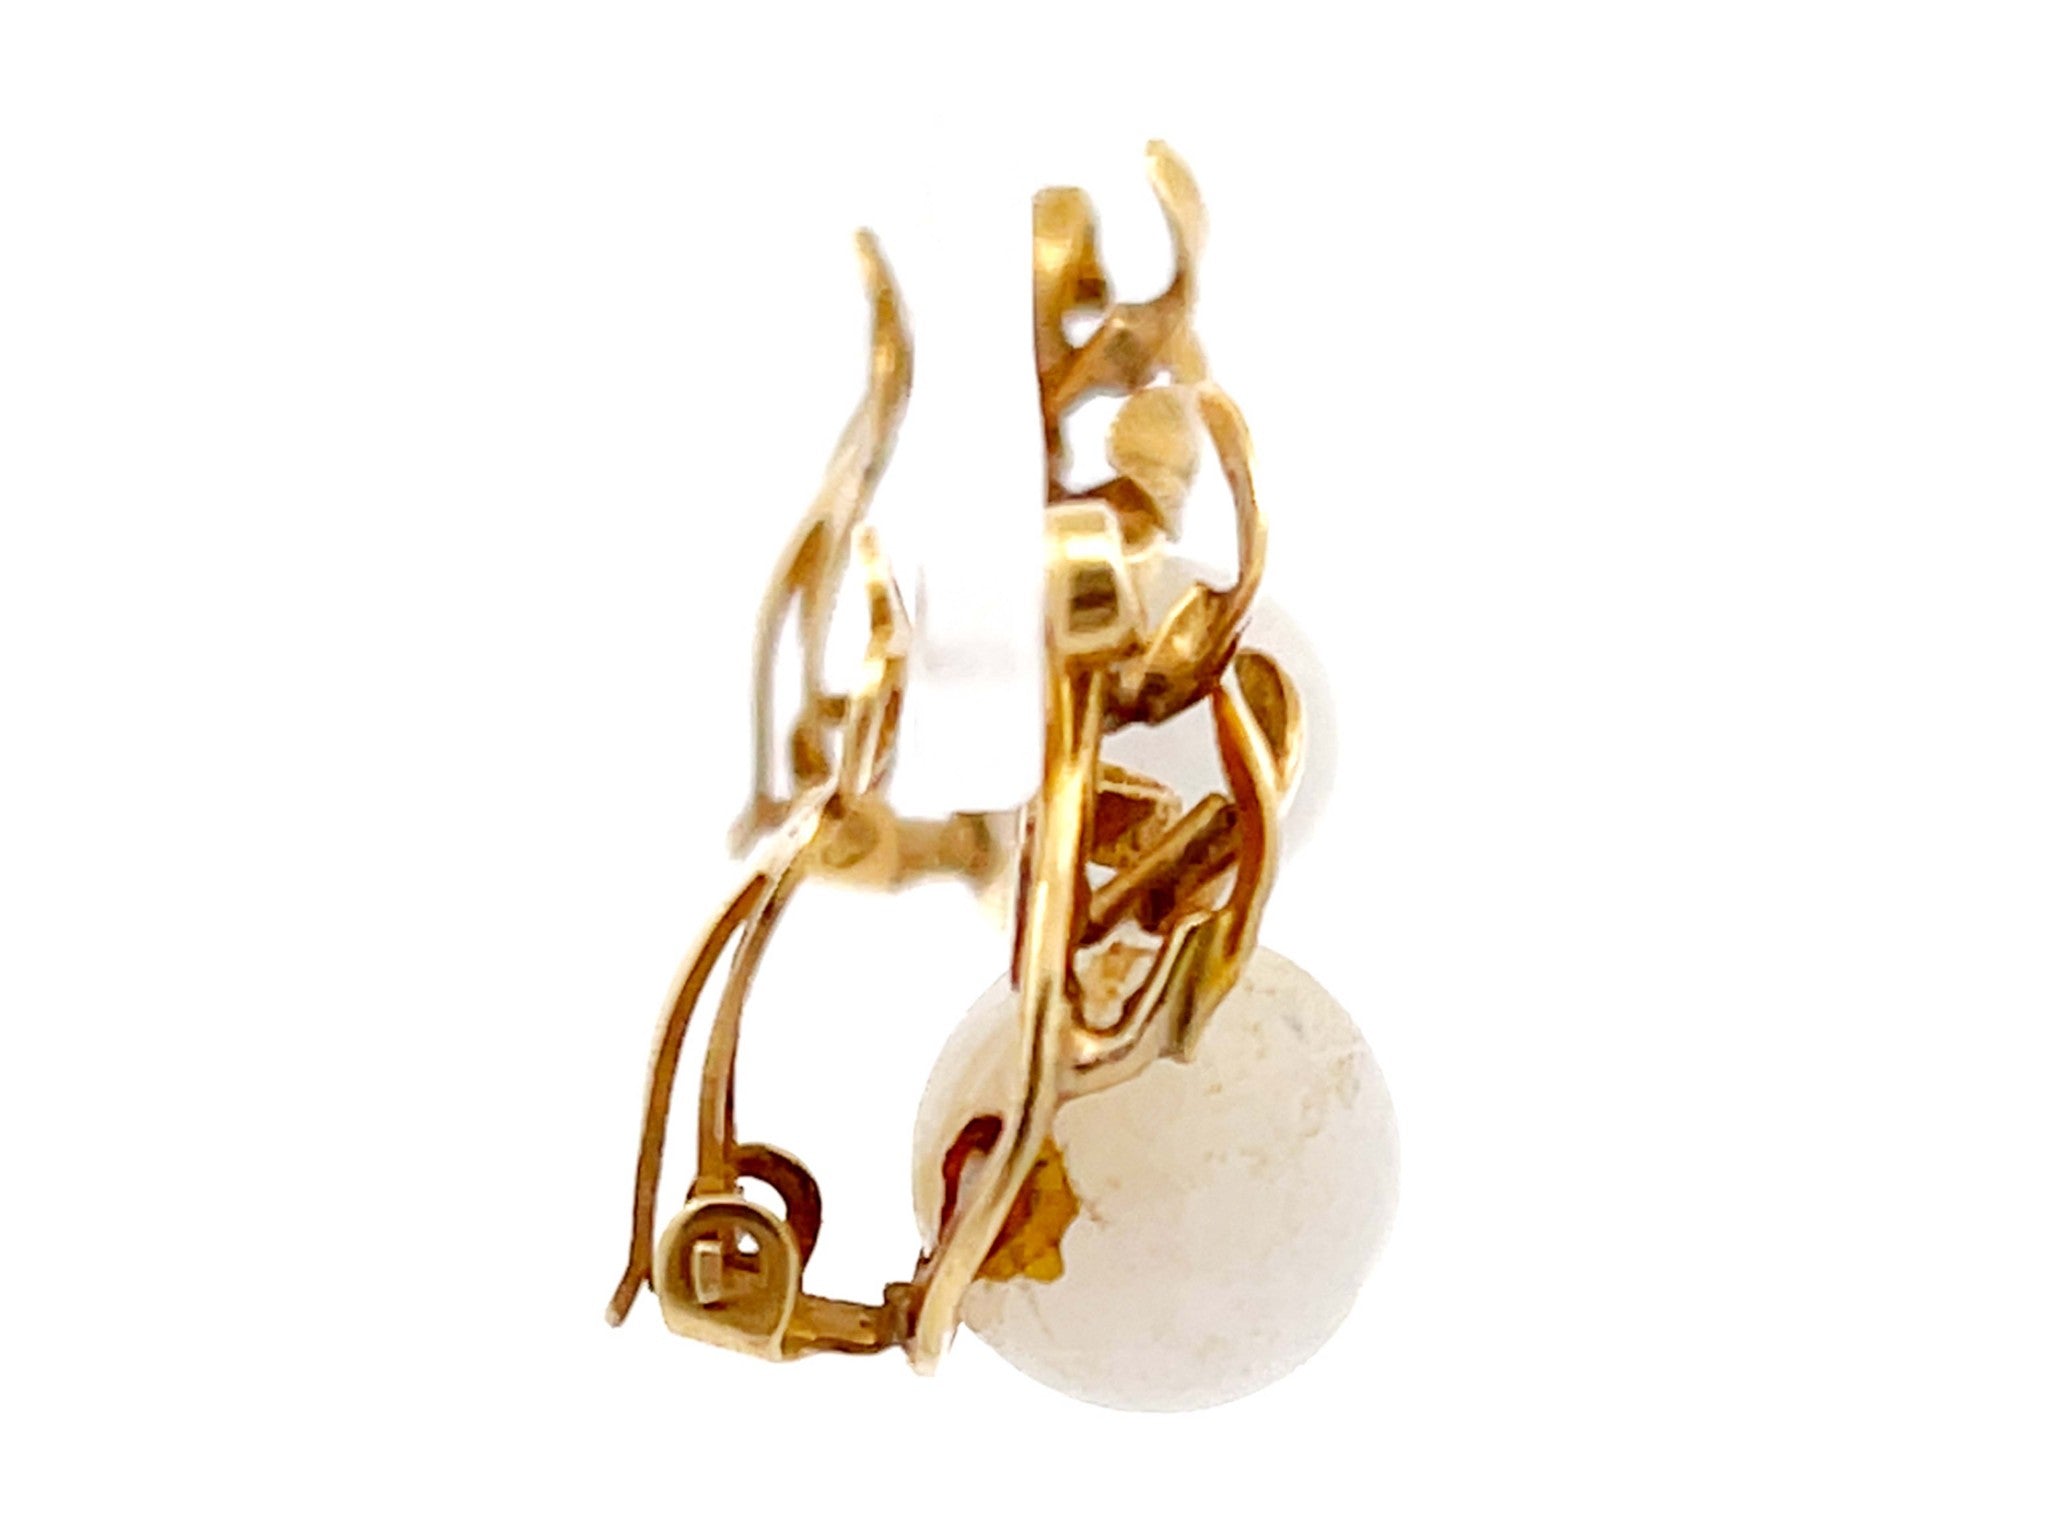 Mings White Jade Sphere and Leaves Clip On Earrings in 14K